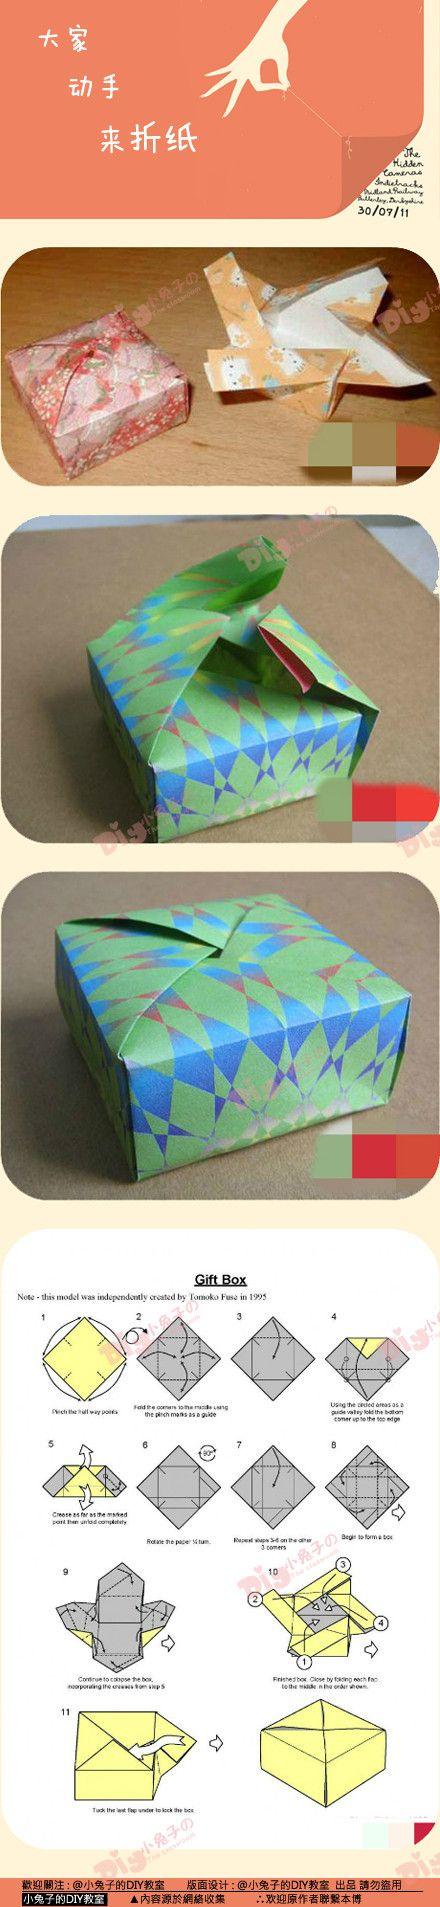 大家动手来折纸方形礼品盒按照自己喜好去折吧